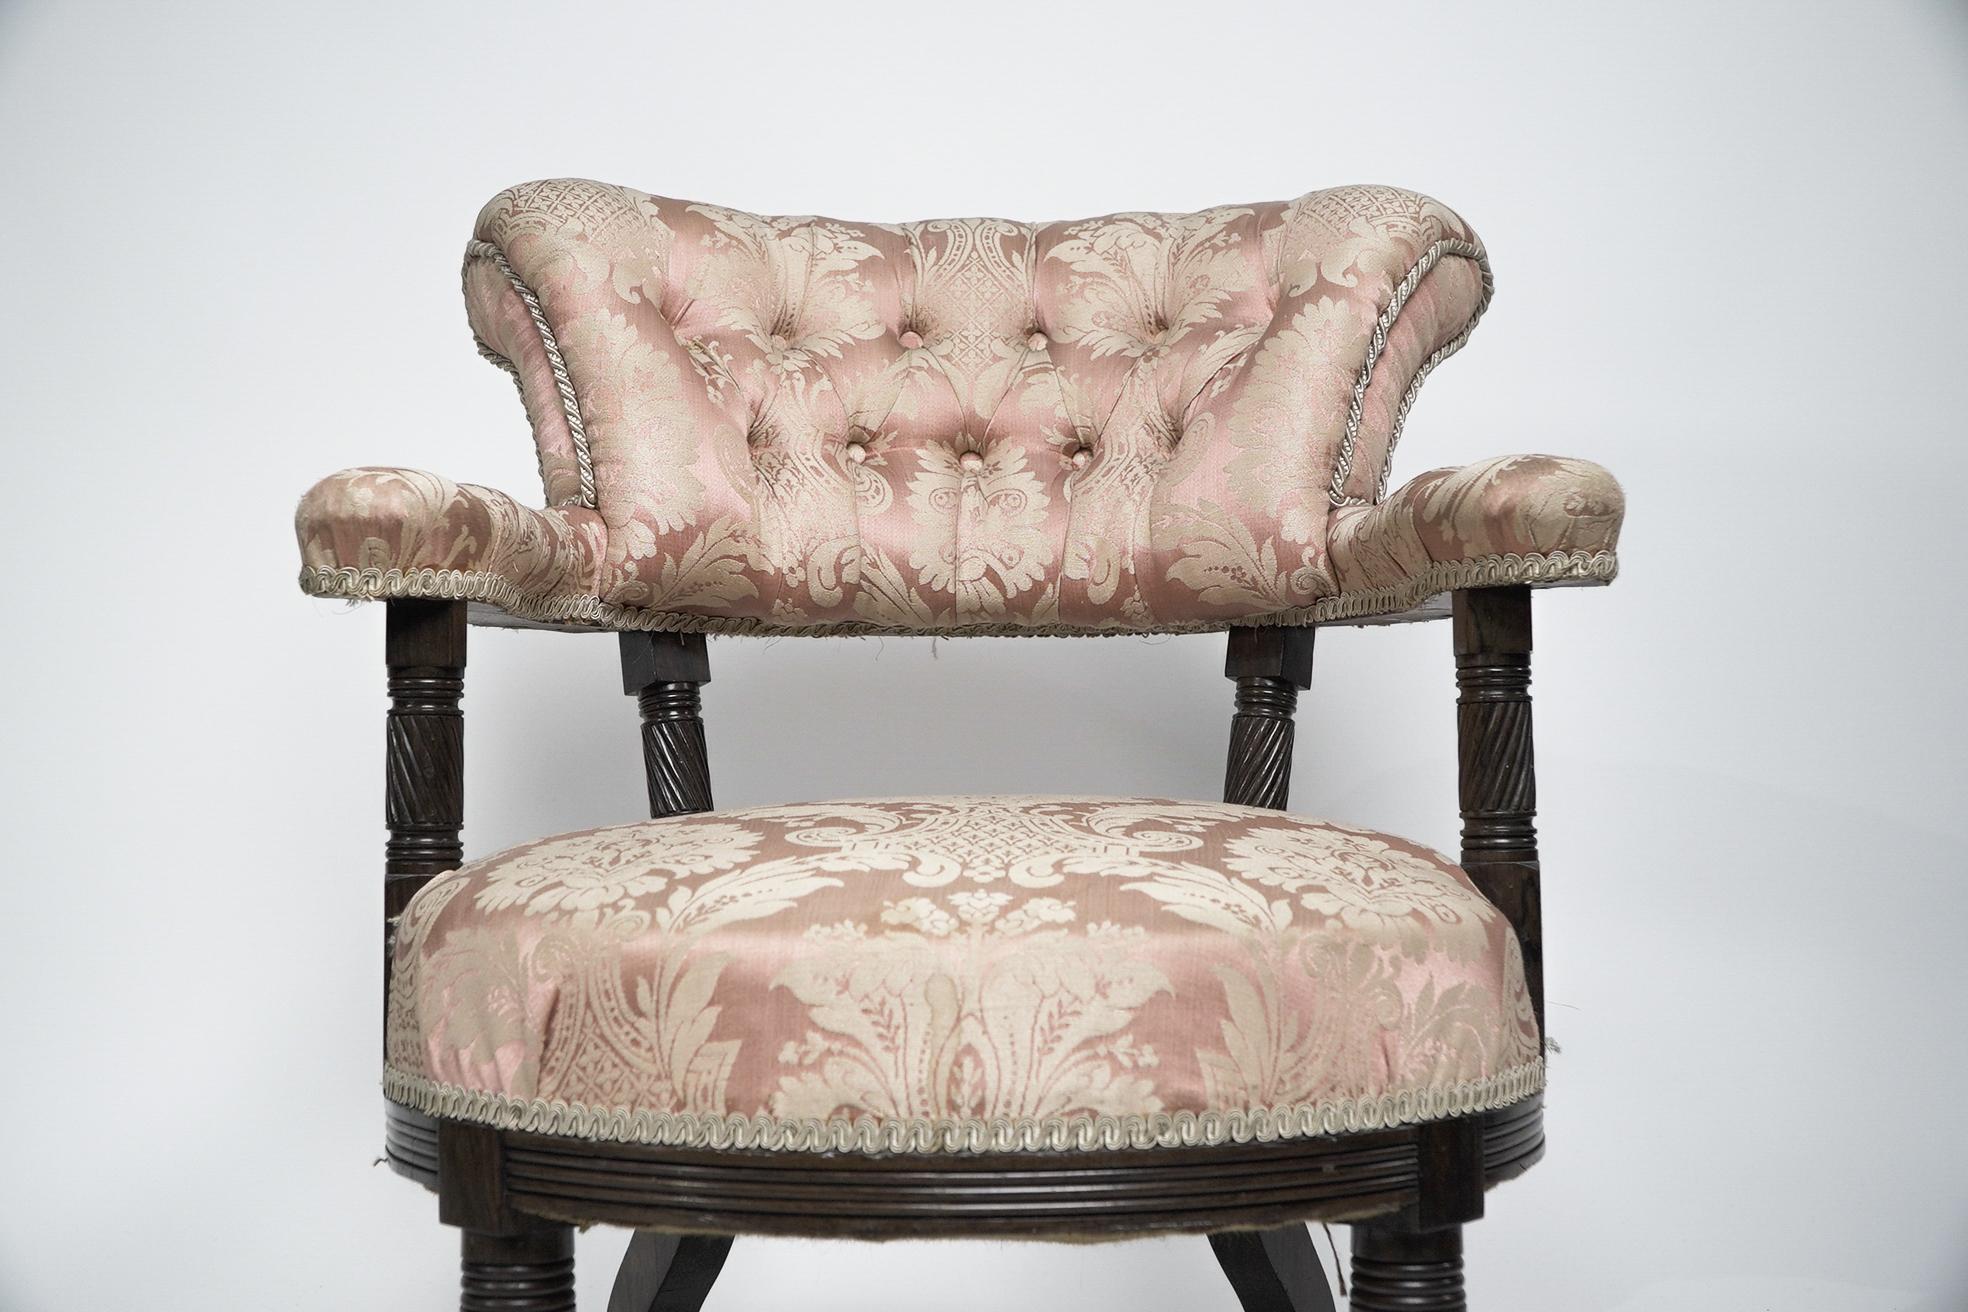 Fin du XIXe siècle Bruce Talbert Gillows, Aesthetic Movement fauteuil en bois de rose avec tapisserie rose en vente